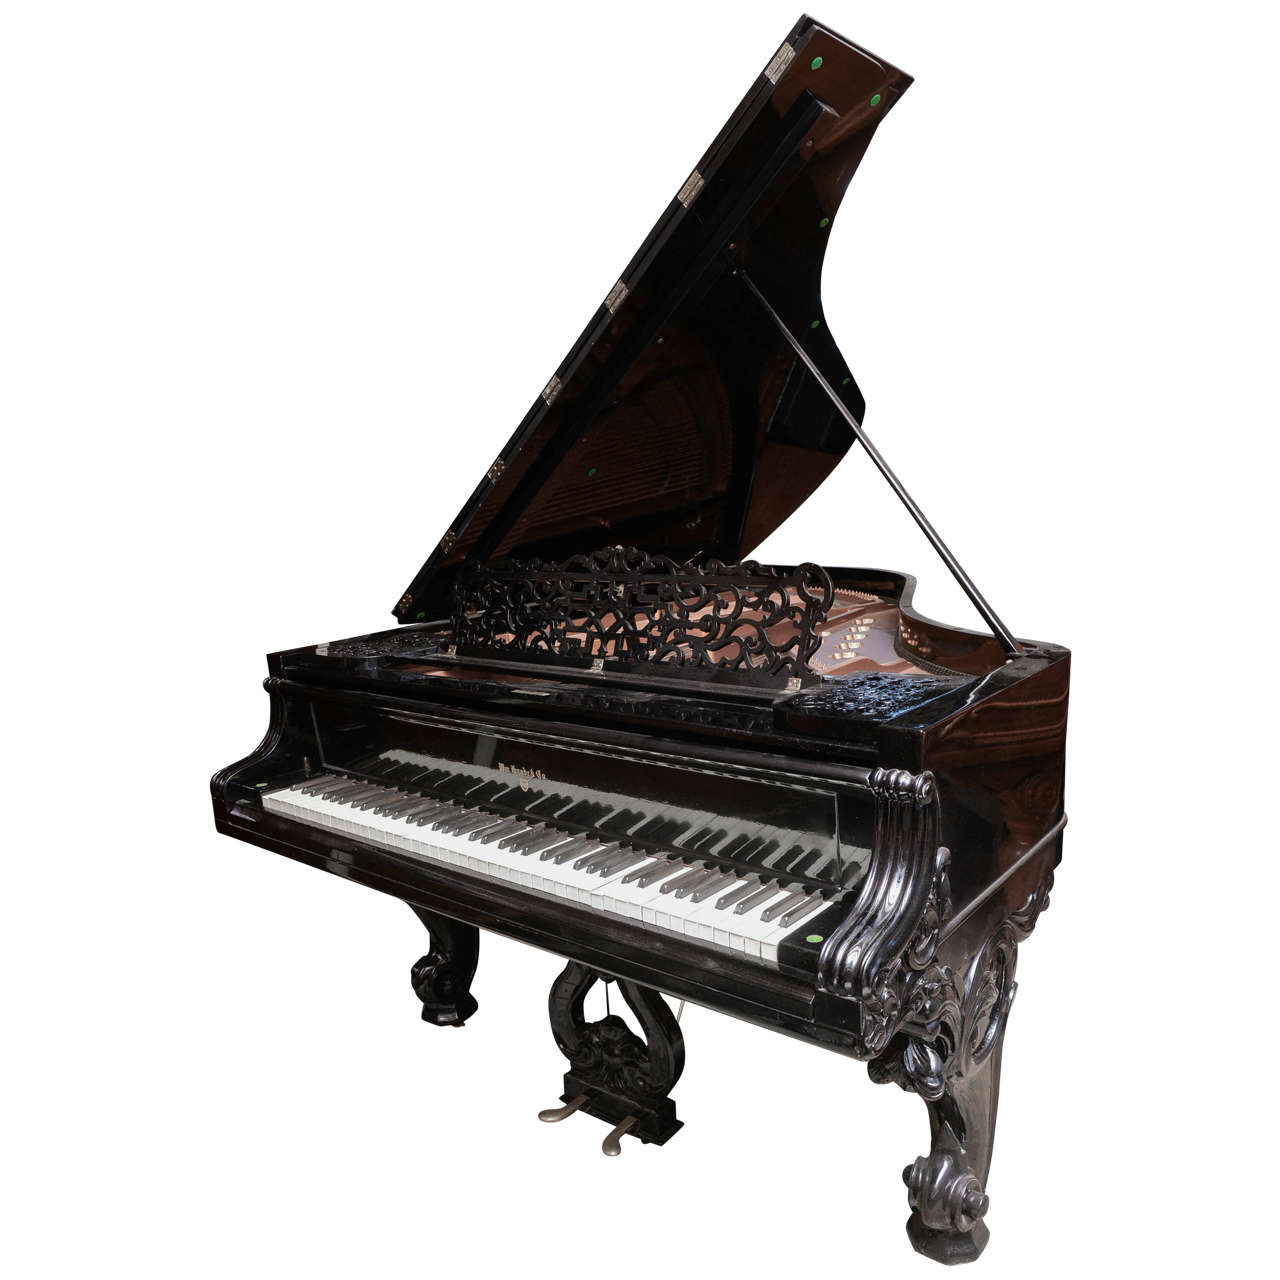 Knabe Grand Piano in Gloss Ebony with Bench